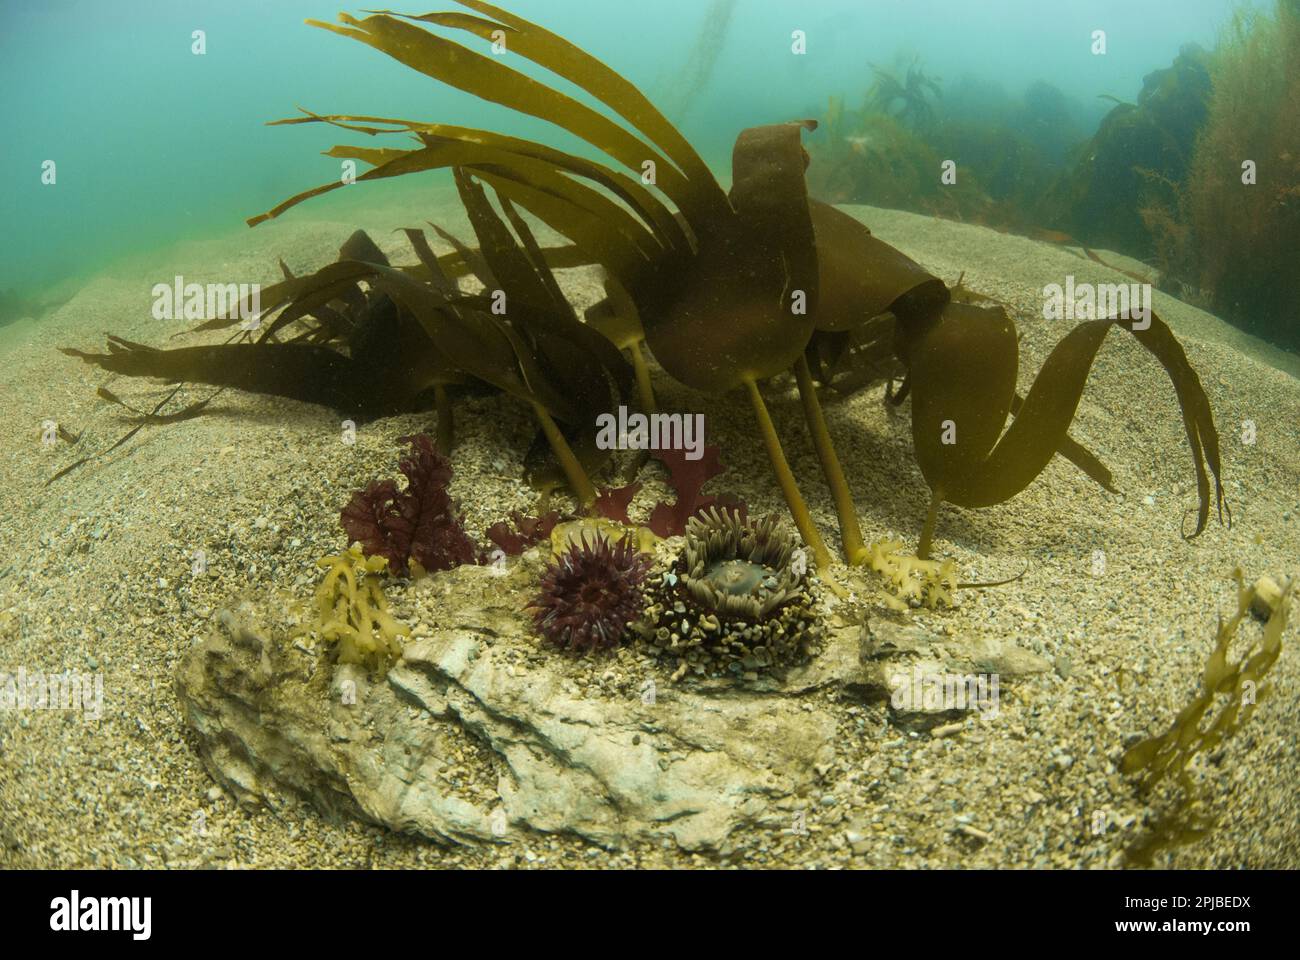 Beadlet Anemone (Actinia equina) y Jewel Anemone (Corynactis haddoni) adultos, con tentáculos extendidos, con Kelp (Laminaria spec.) en el fondo marino Foto de stock